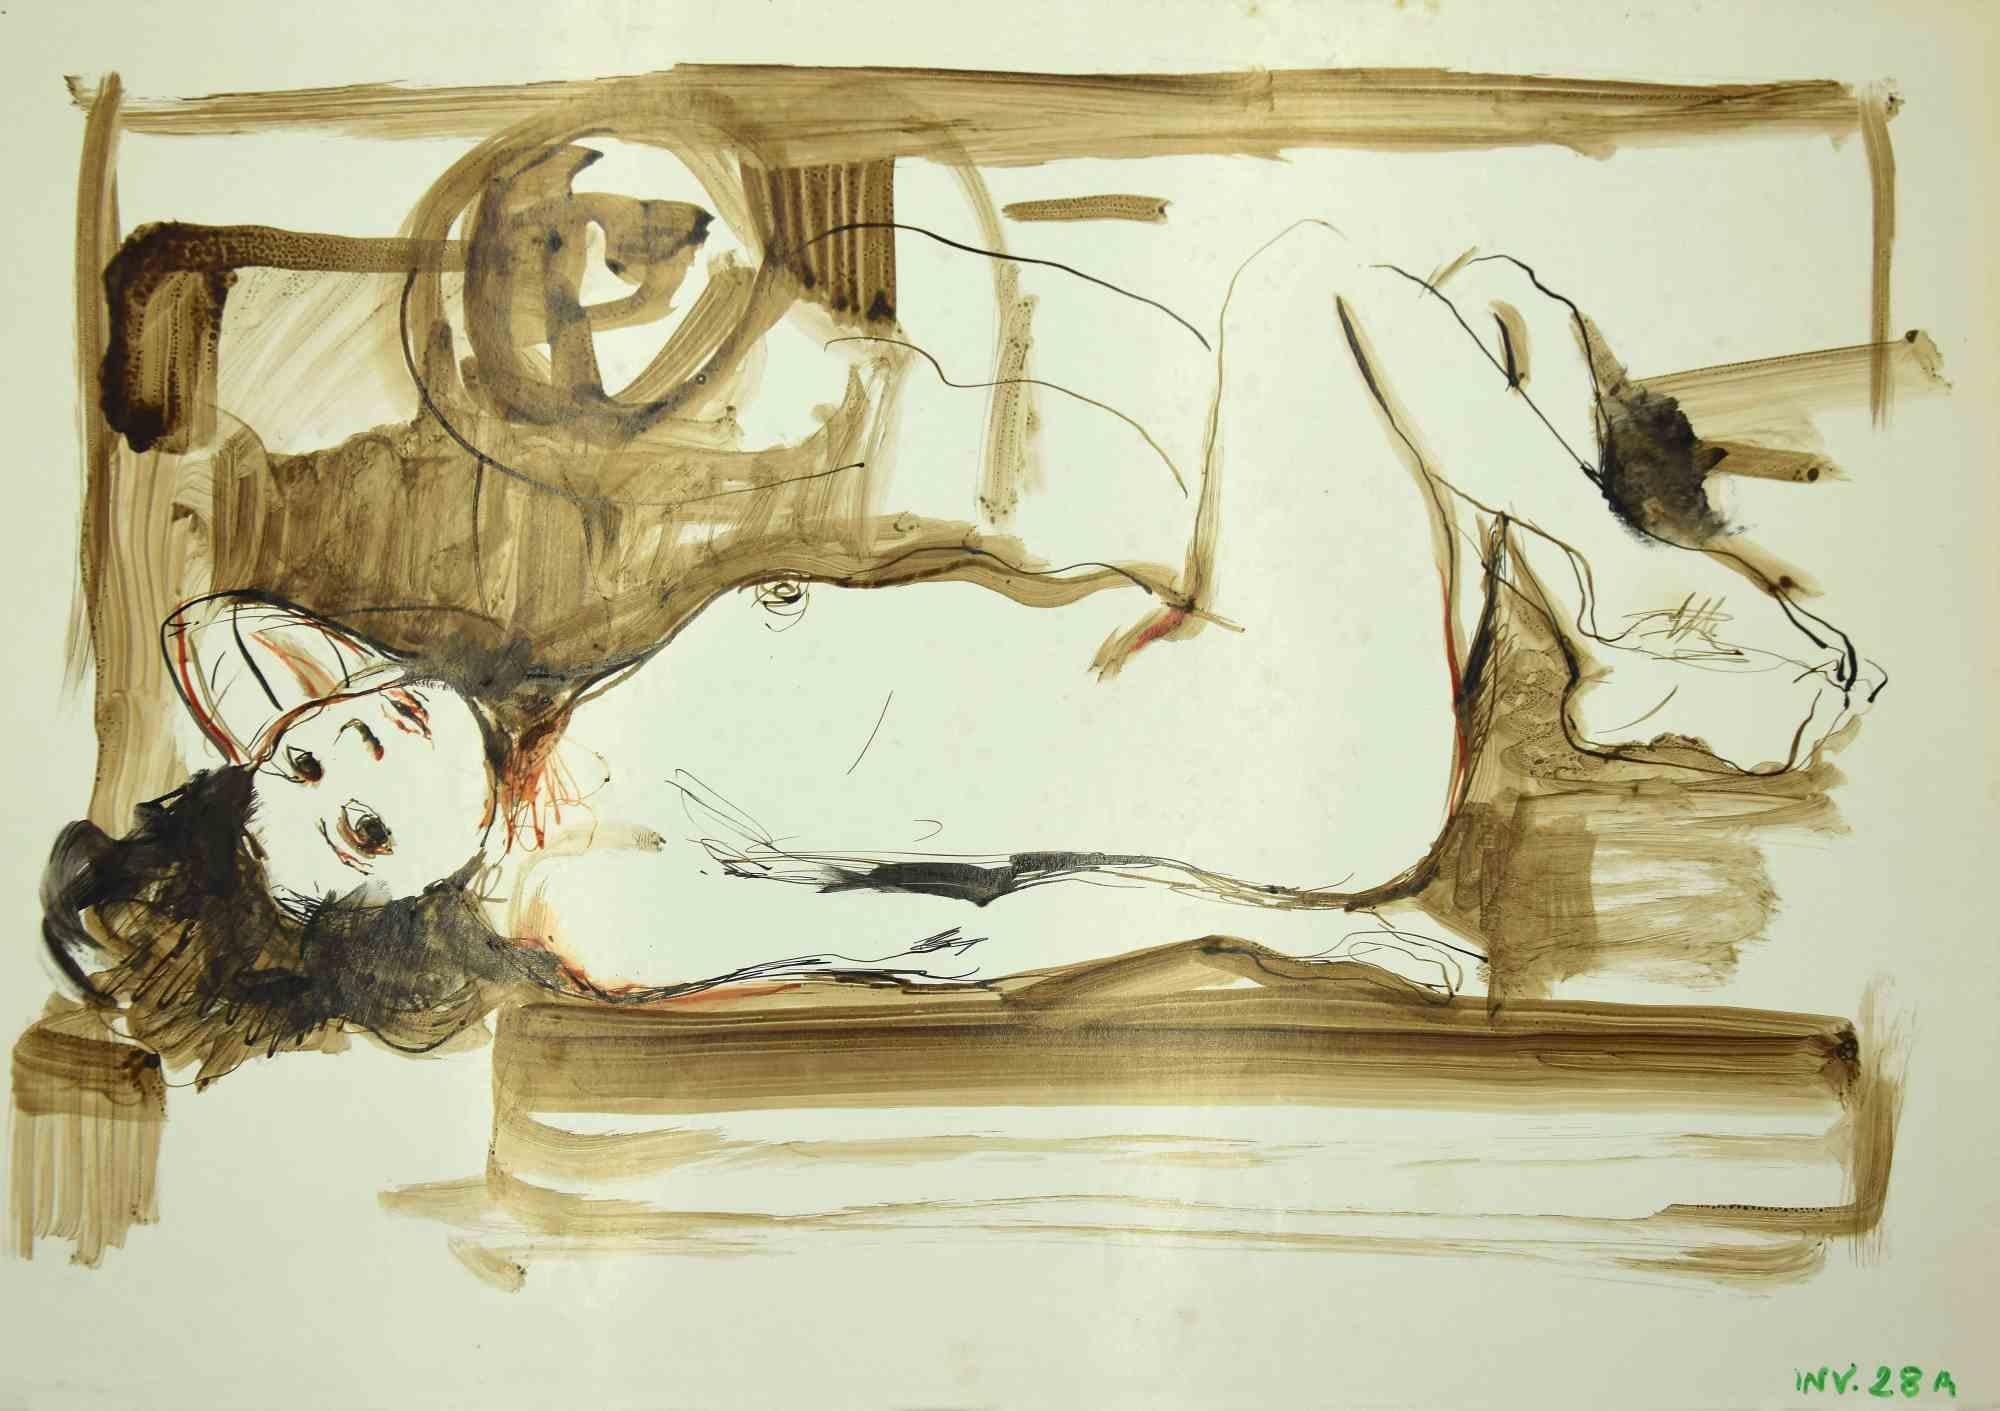 Reclined Nude ist eine Originalzeichnung in Tusche und Aquarell auf Papier von Leo Guida aus den 1970er Jahren.

Guter Zustand.

Leo Guida  (1992 - 2017). Mit seinem Gespür für aktuelle Themen, künstlerische Strömungen und historische Techniken ist